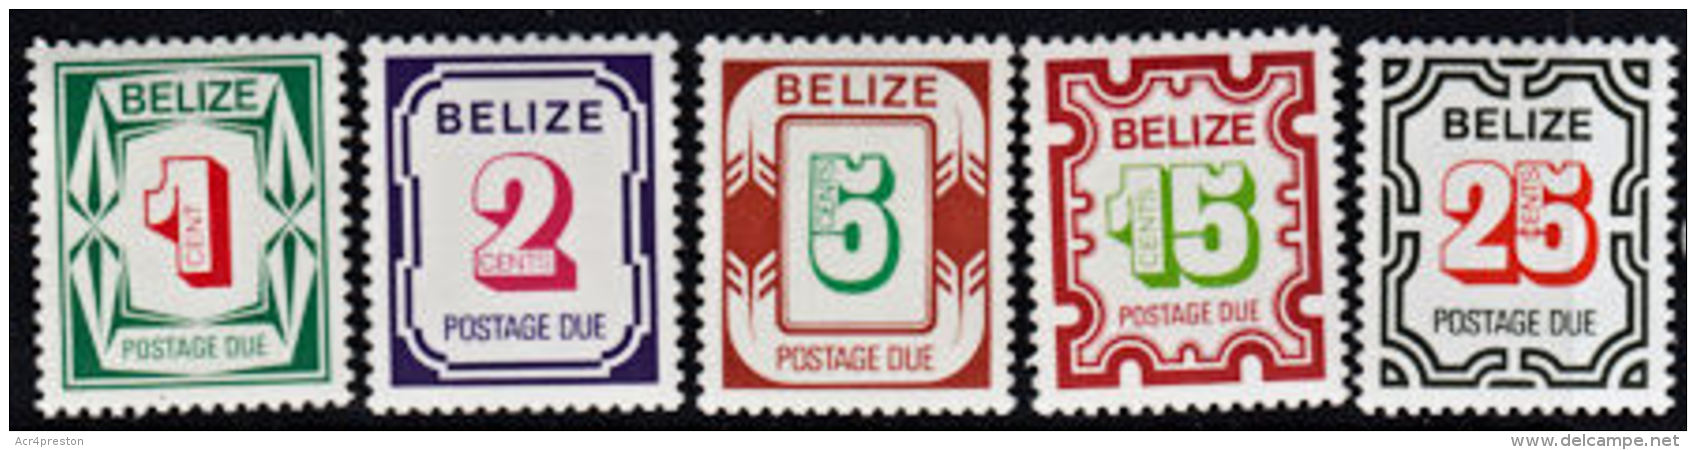 C0168 BELIZE 1976, SG D6-10 Postage Due Stamps  MNH - Belize (1973-...)